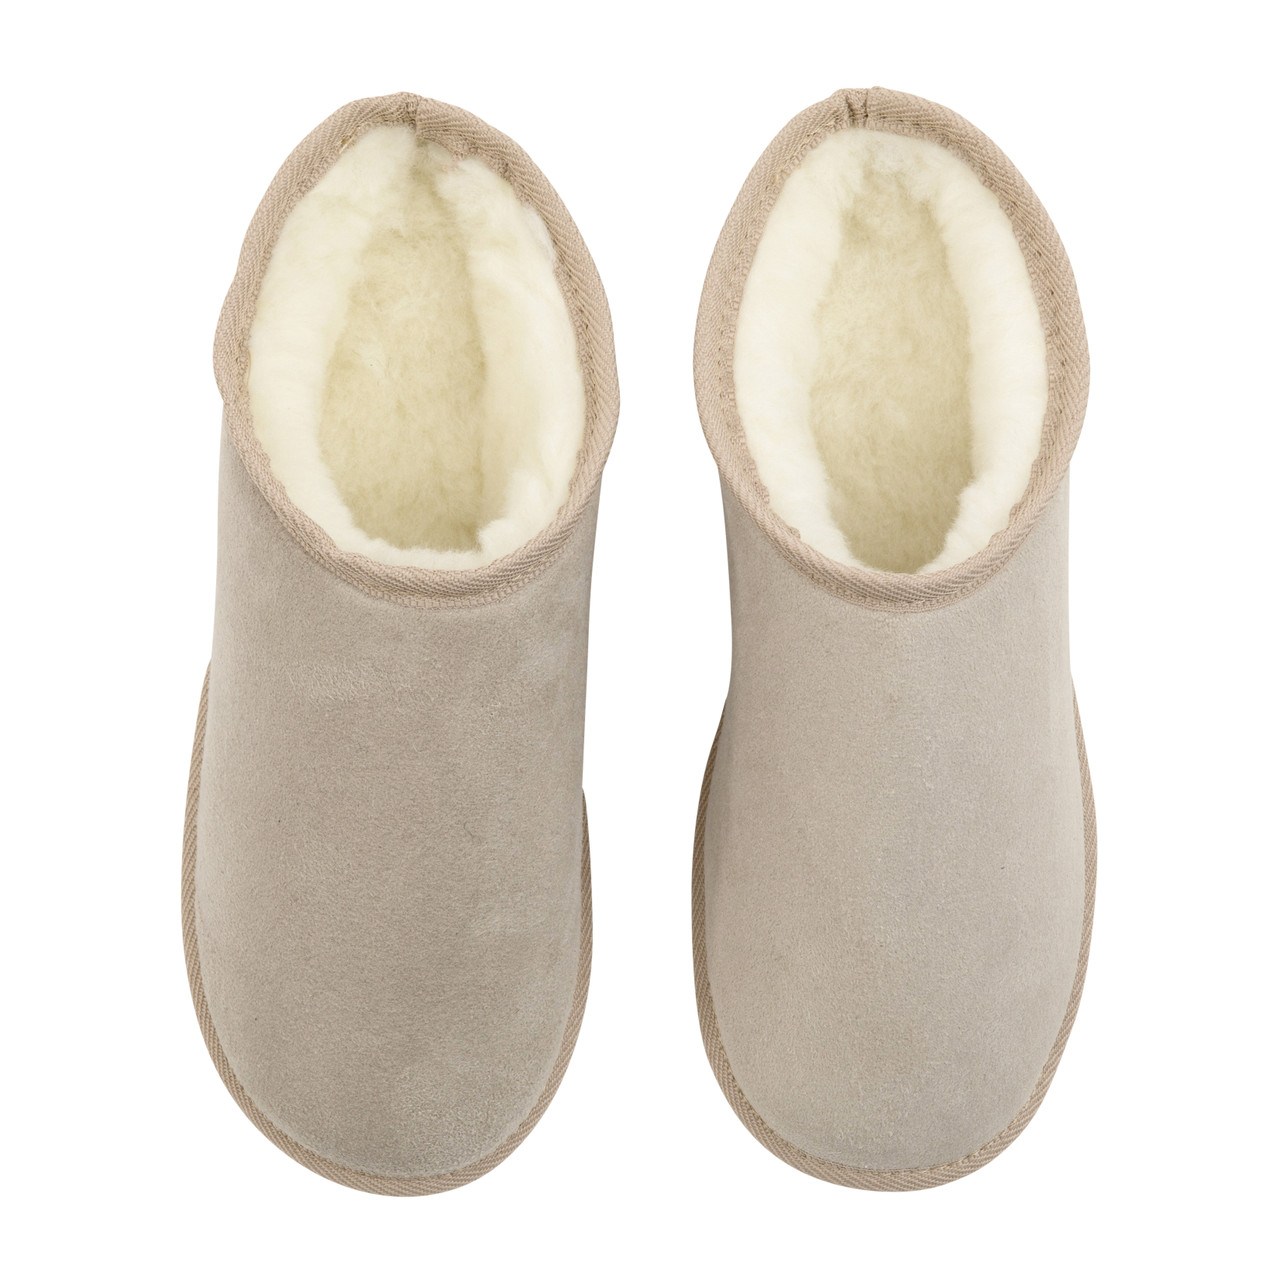 Australian wool slippers